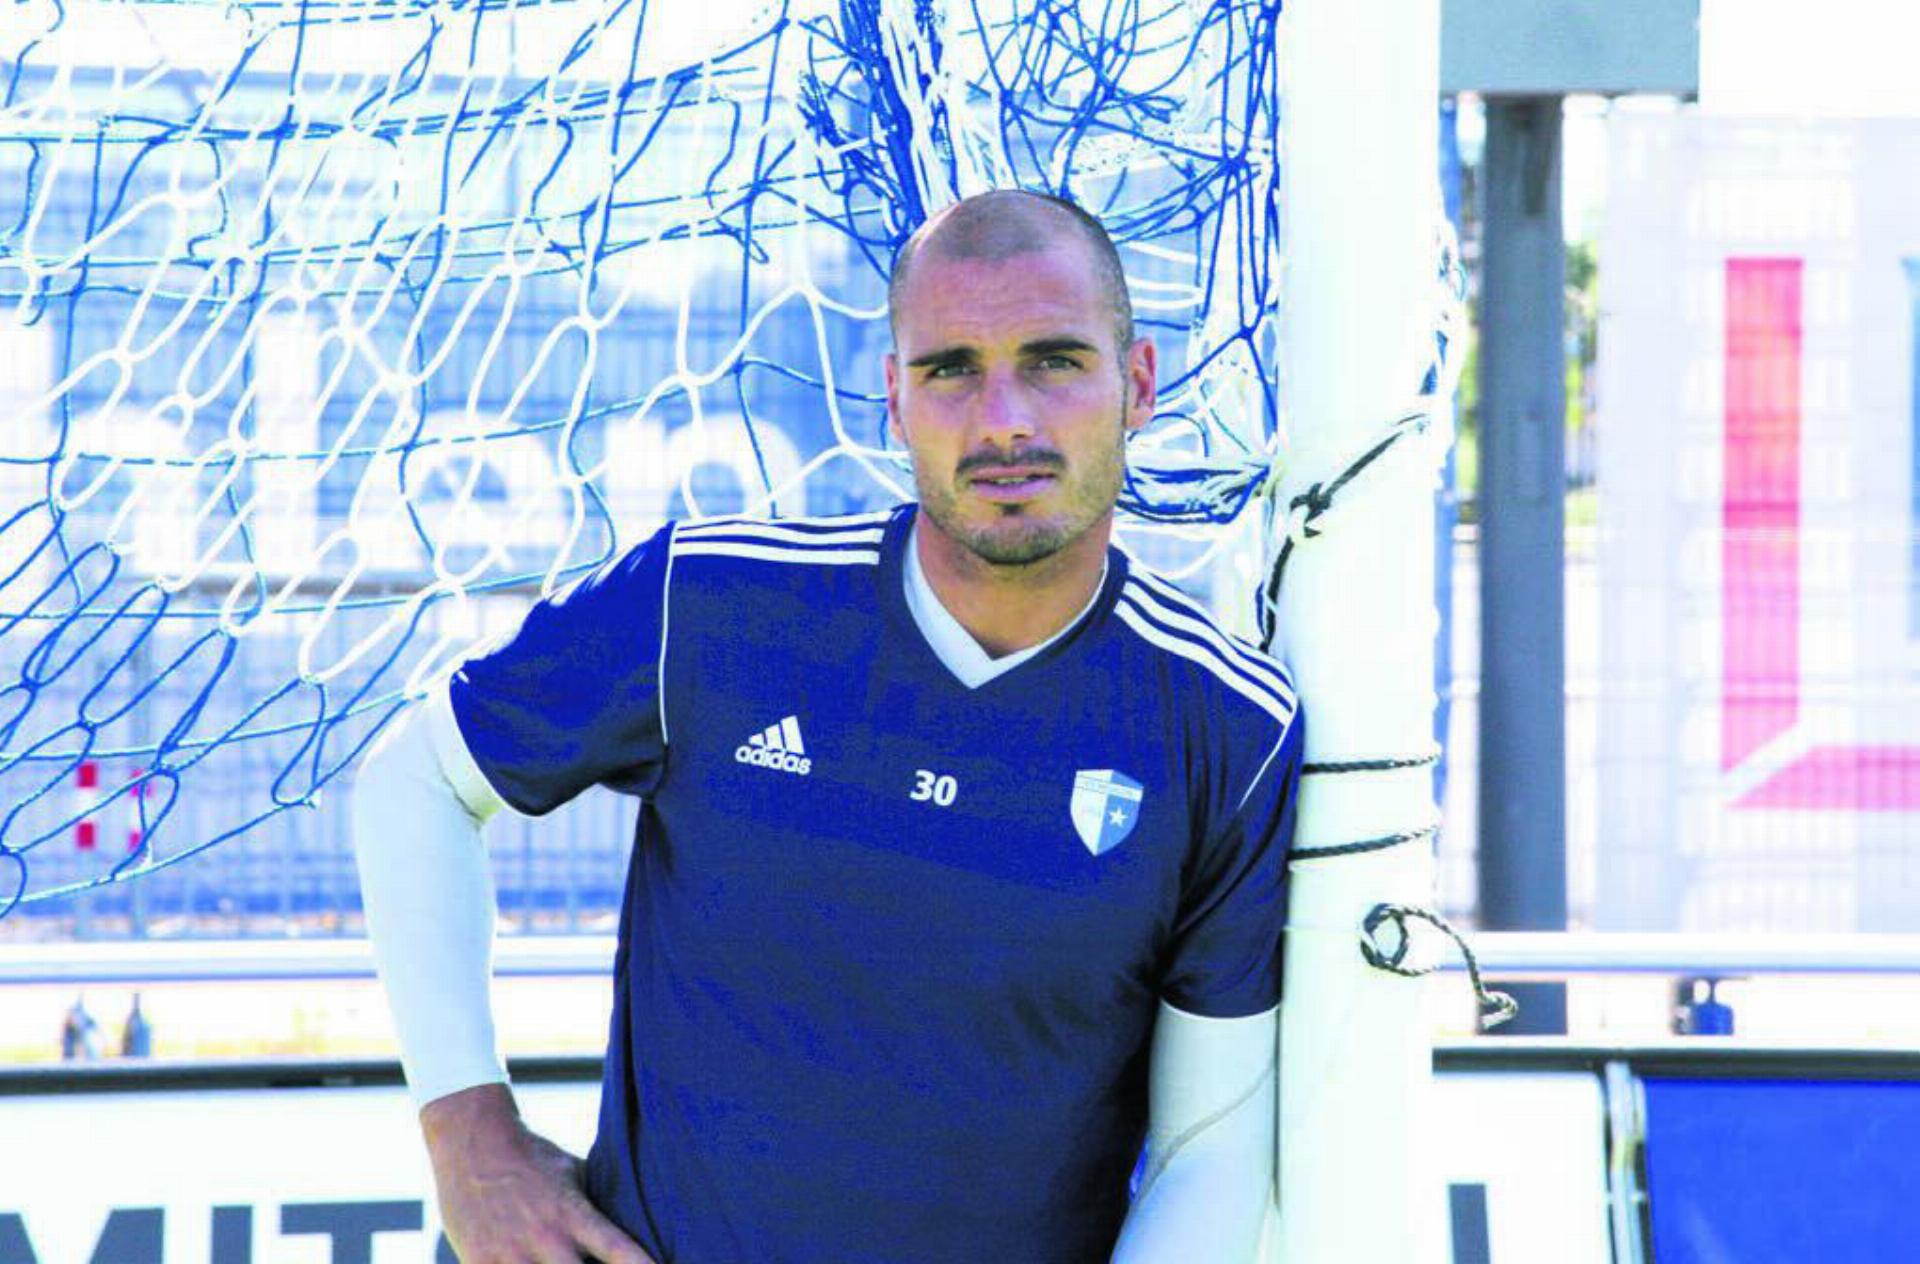 Sommer 2013: Ivan Benito kommt als Goalie zum FC Wohlen. Heute – elf Jahre danach – kehrt er als Sportkoordinator zurück. Bild: Archiv